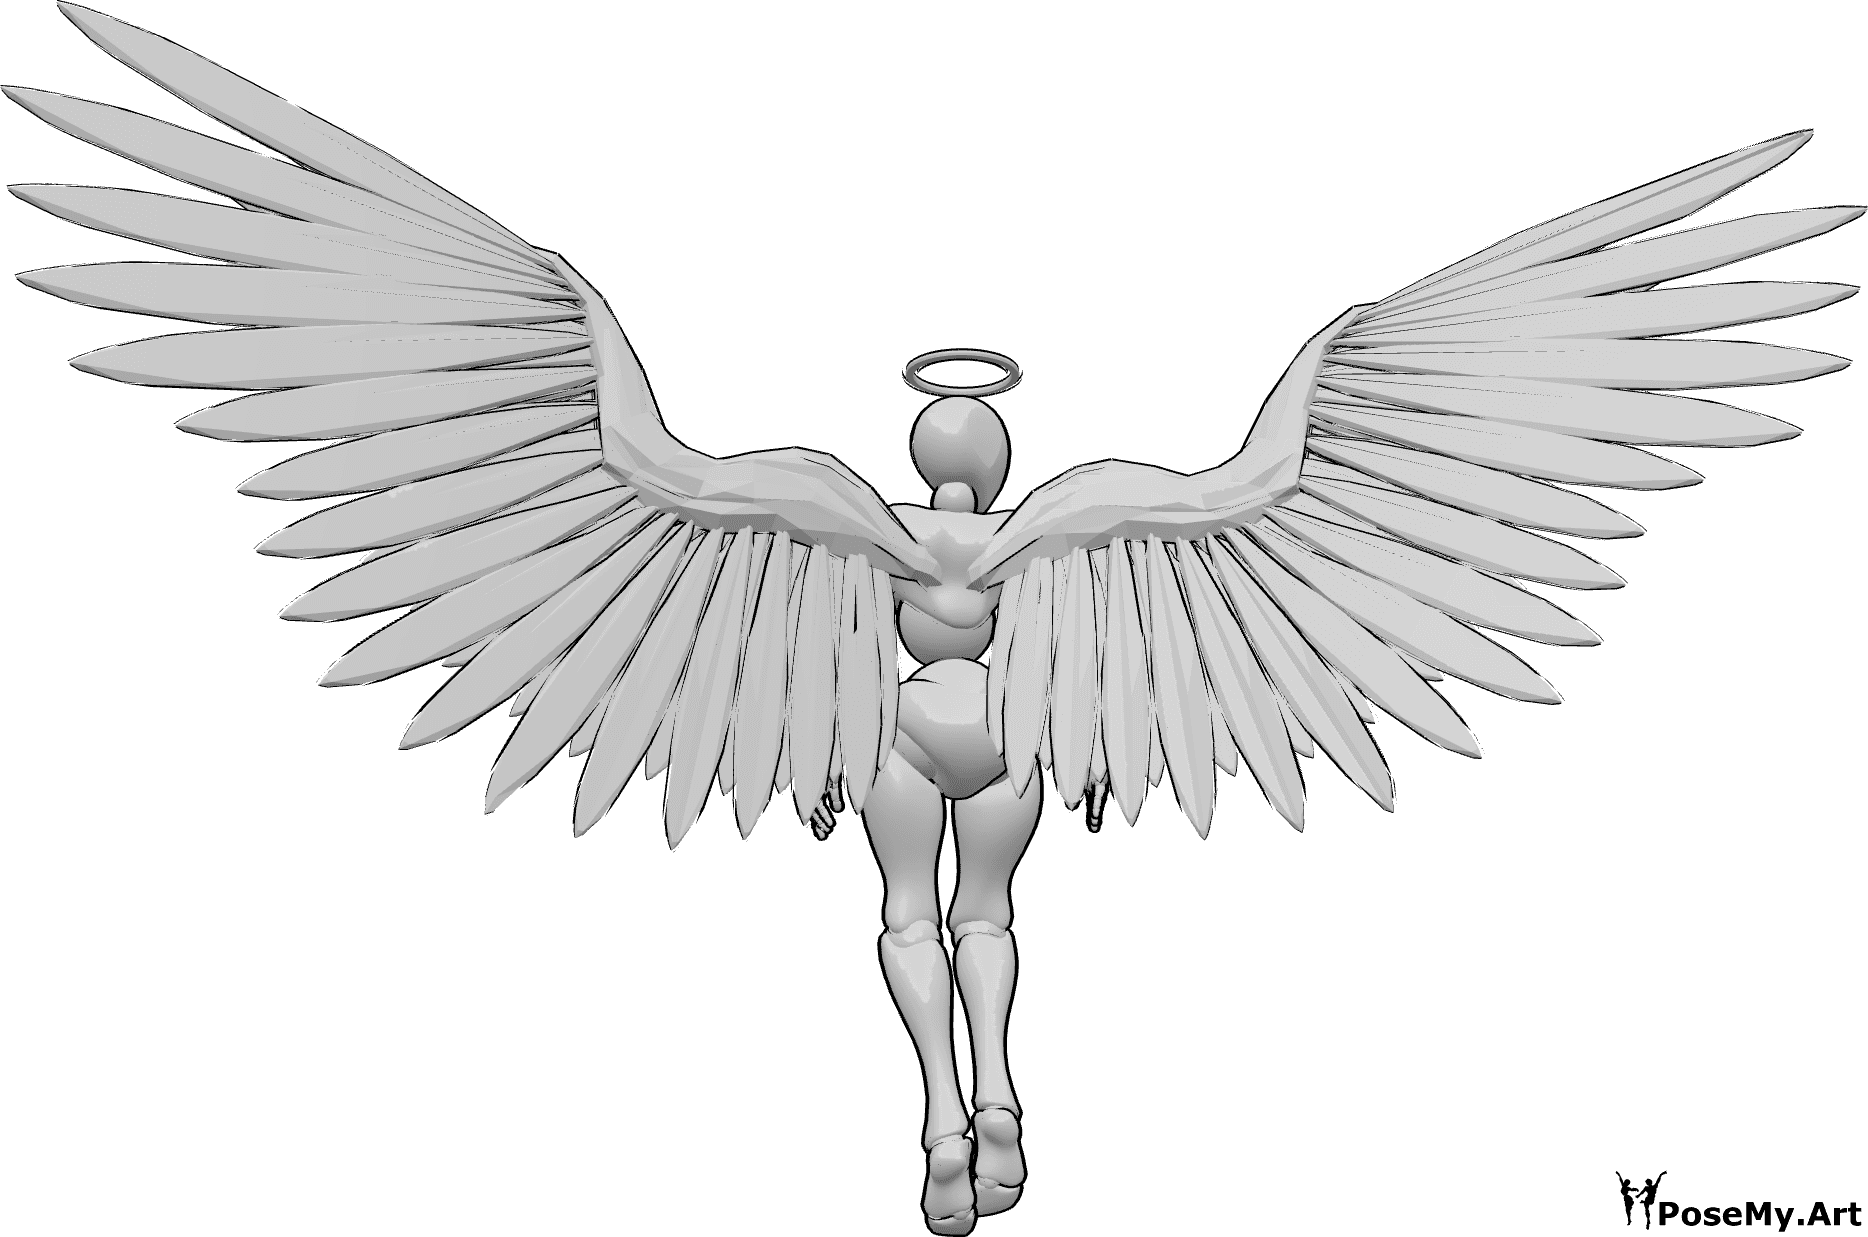 Référence des poses- Pose des ailes d'ange - Ailes d'ange vues de dos, une femme avec des ailes d'ange et une auréole vole, regardant vers la droite